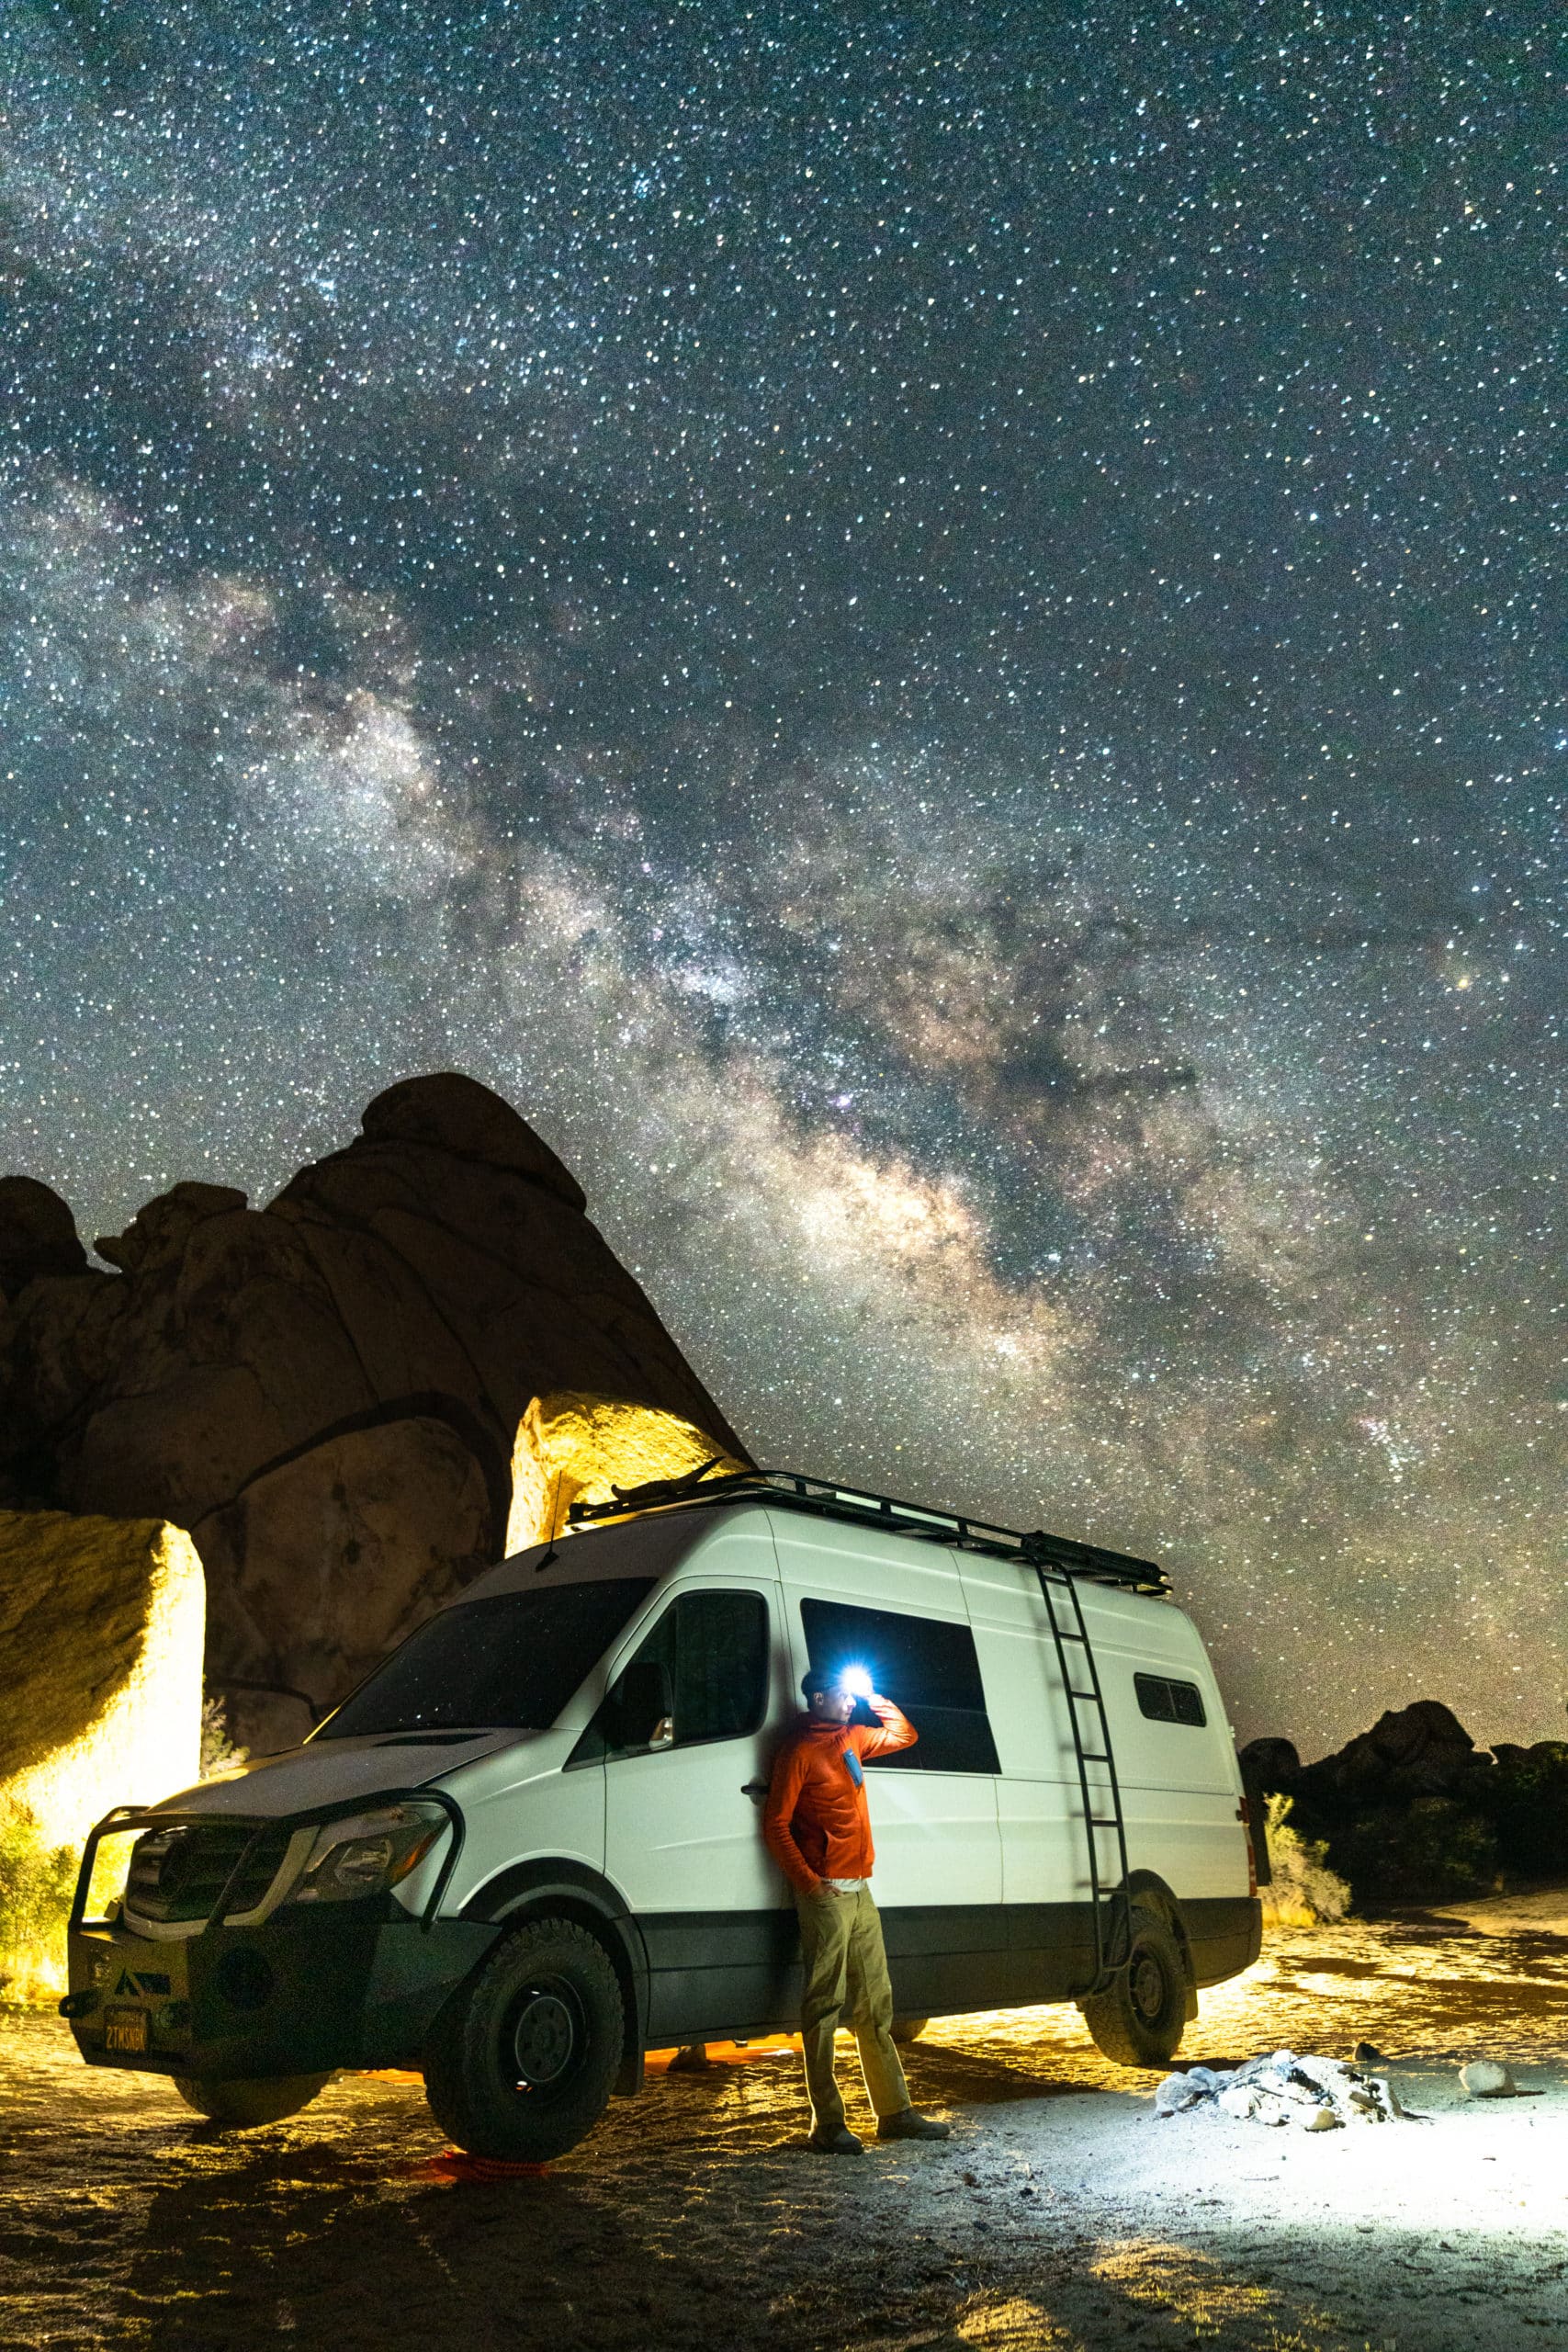 Desert Cruisers' Van in the Desert Under the Milky Way